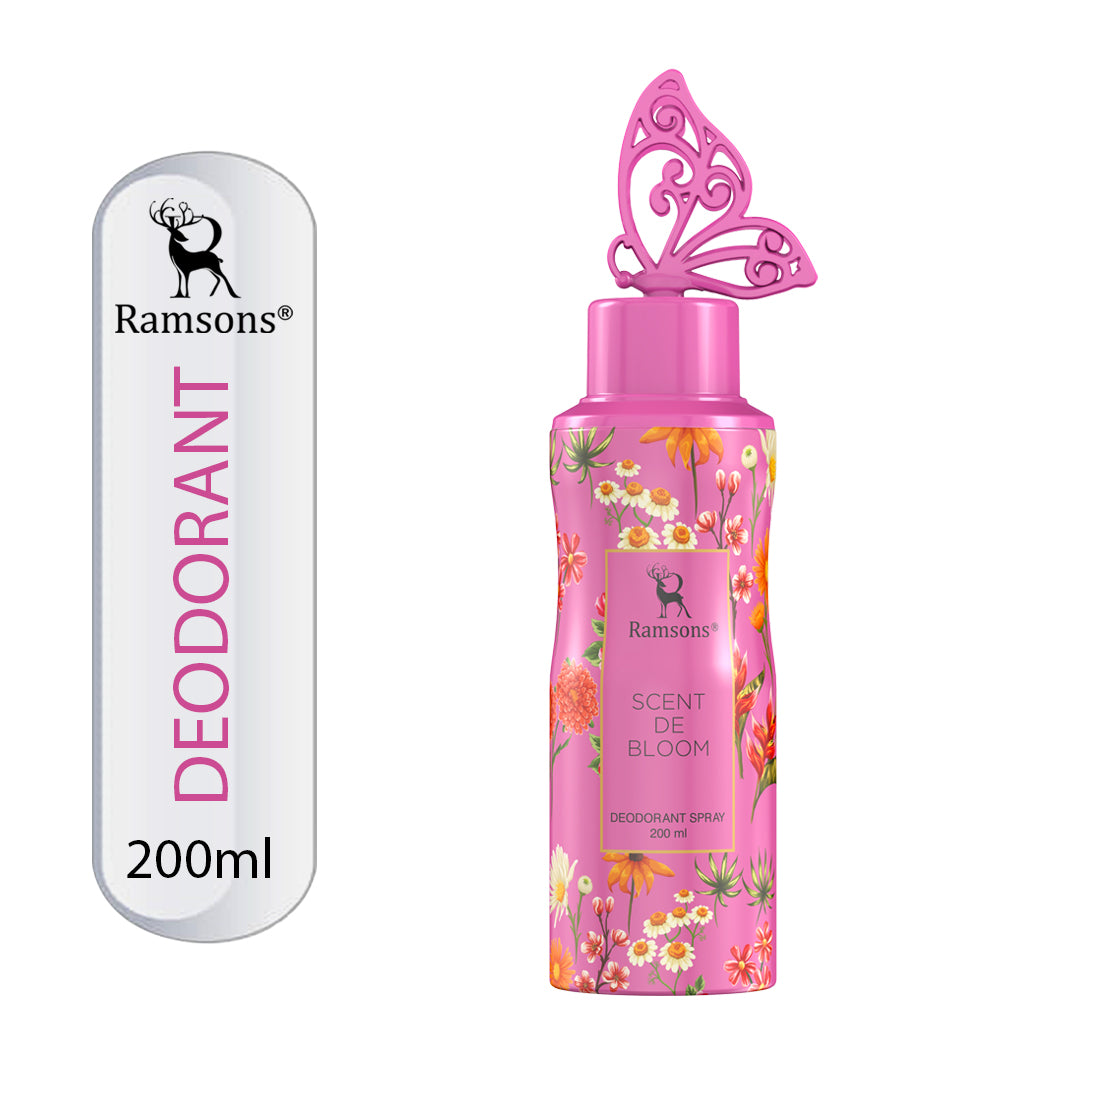 Scent de Bloom deodorant Spray